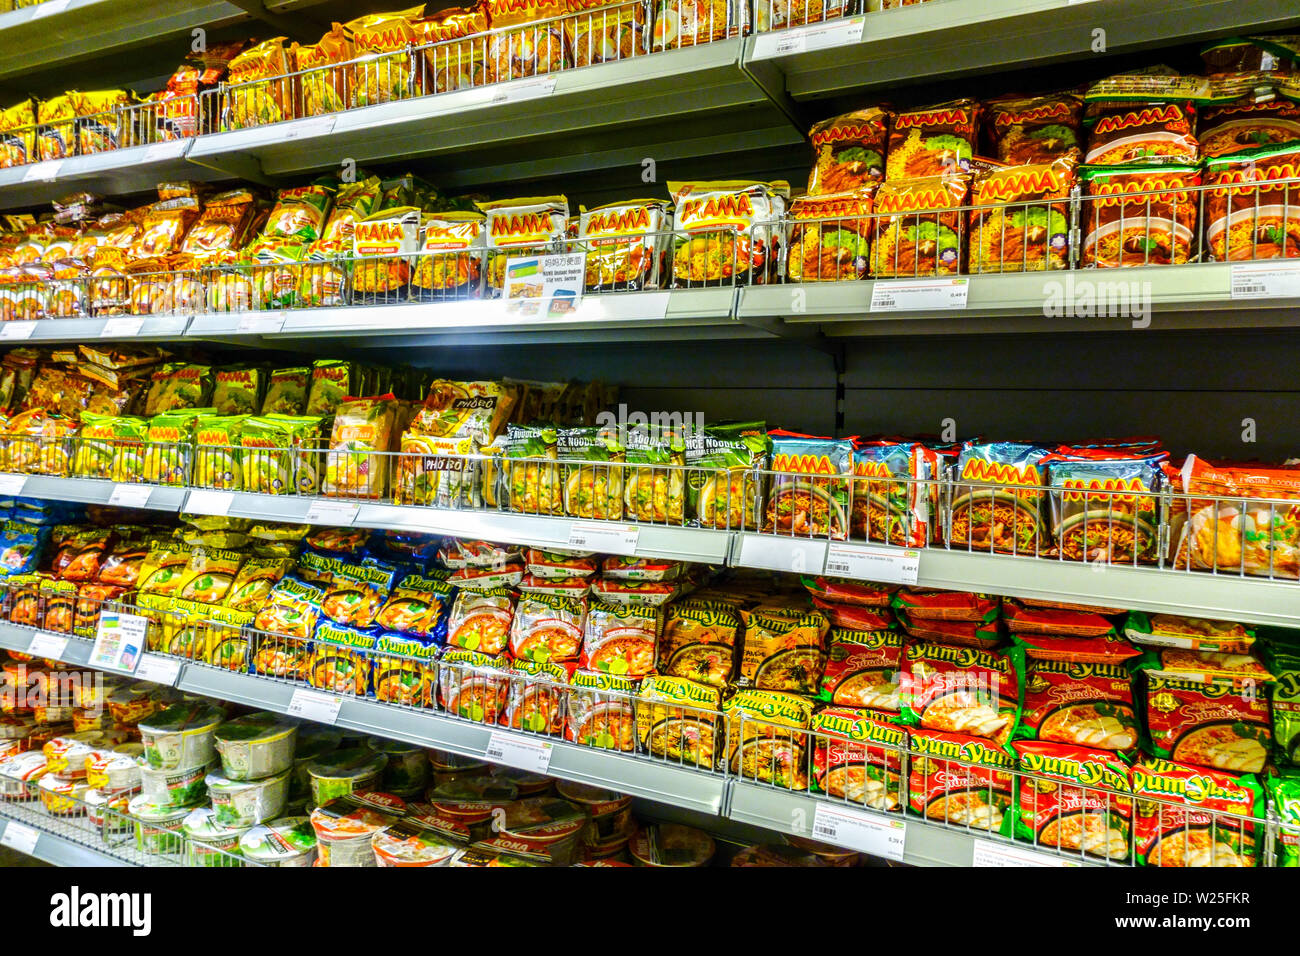 Seulement des produits asiatiques dans le supermarché 'Go Asia', potages instantanés, Dresde, Allemagne supermarchés étagères Banque D'Images